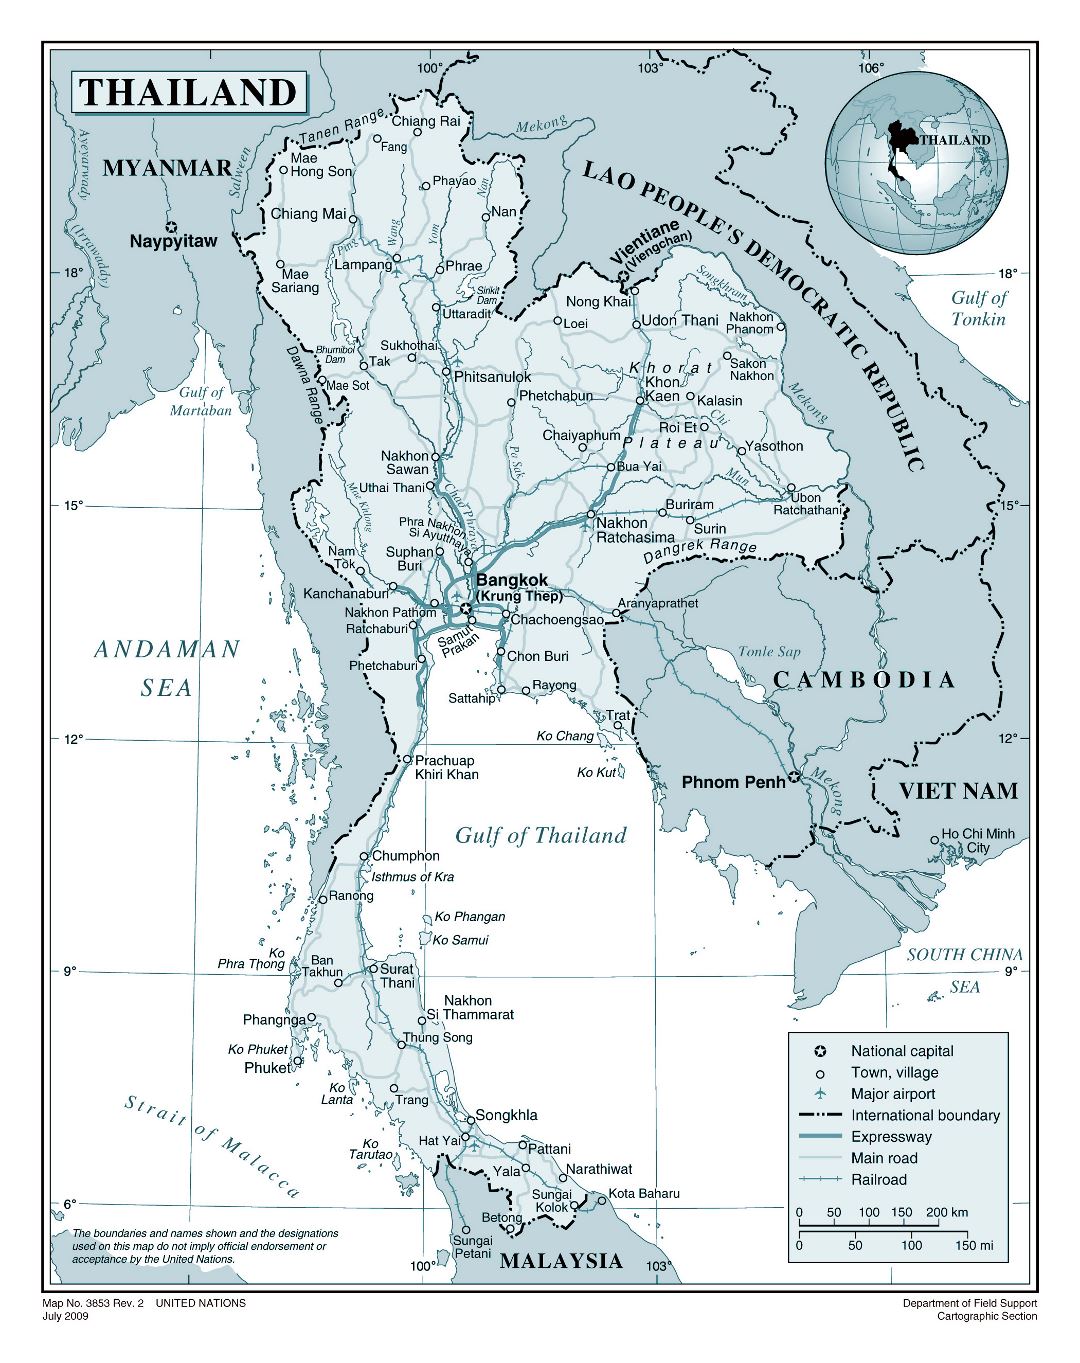 Большая детальная политическая карта Таиланда с дорогами, железными дорогами, городами и аэропортами